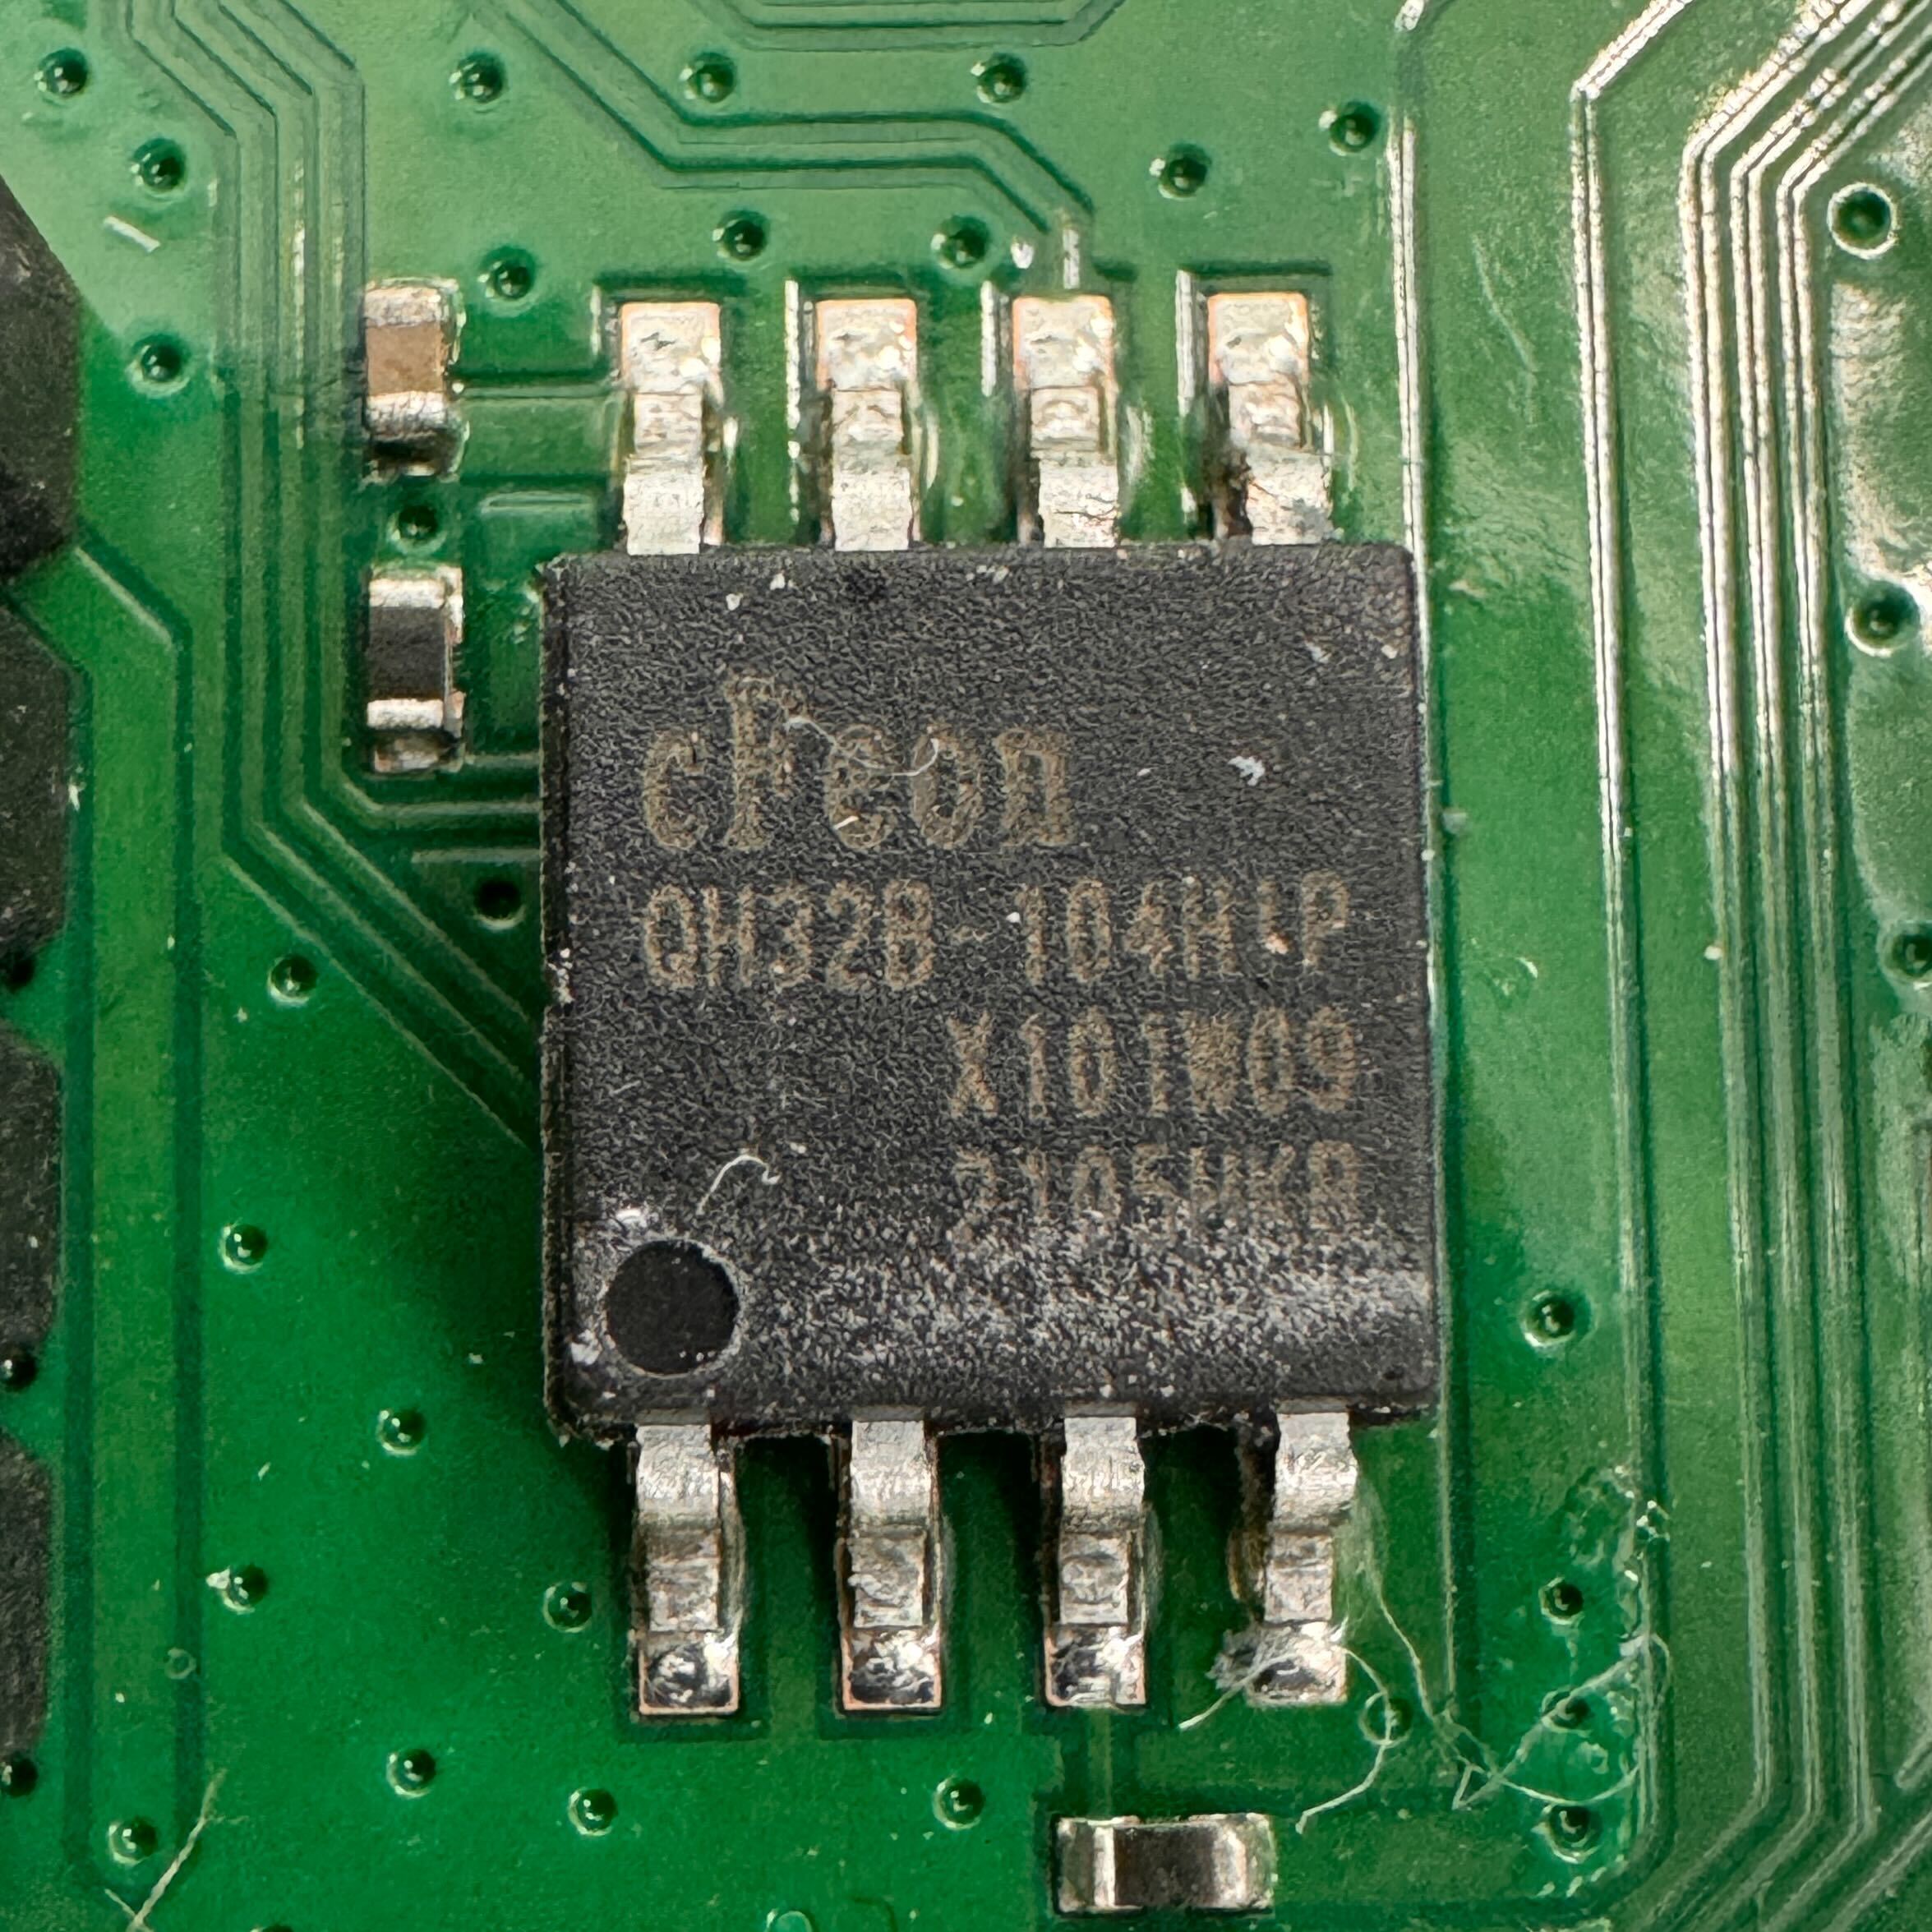 SPI Flash chip